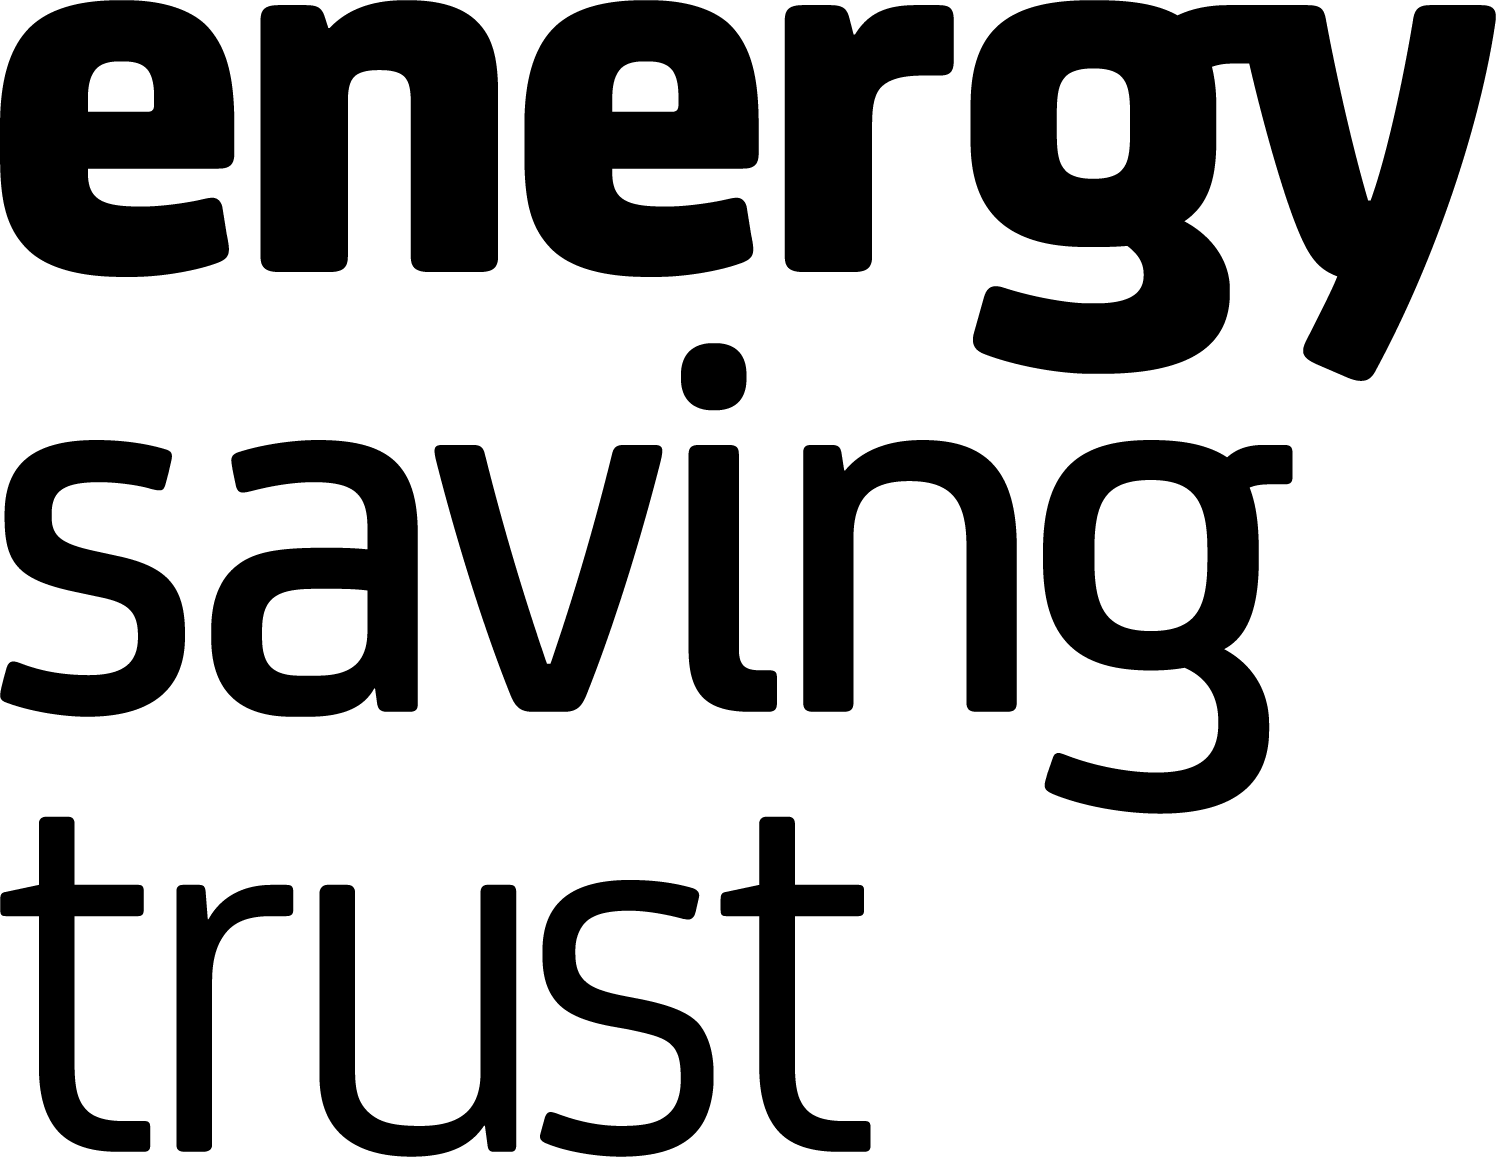 Logo for energy saving trust. 'Energy saving trust' written in black on white background